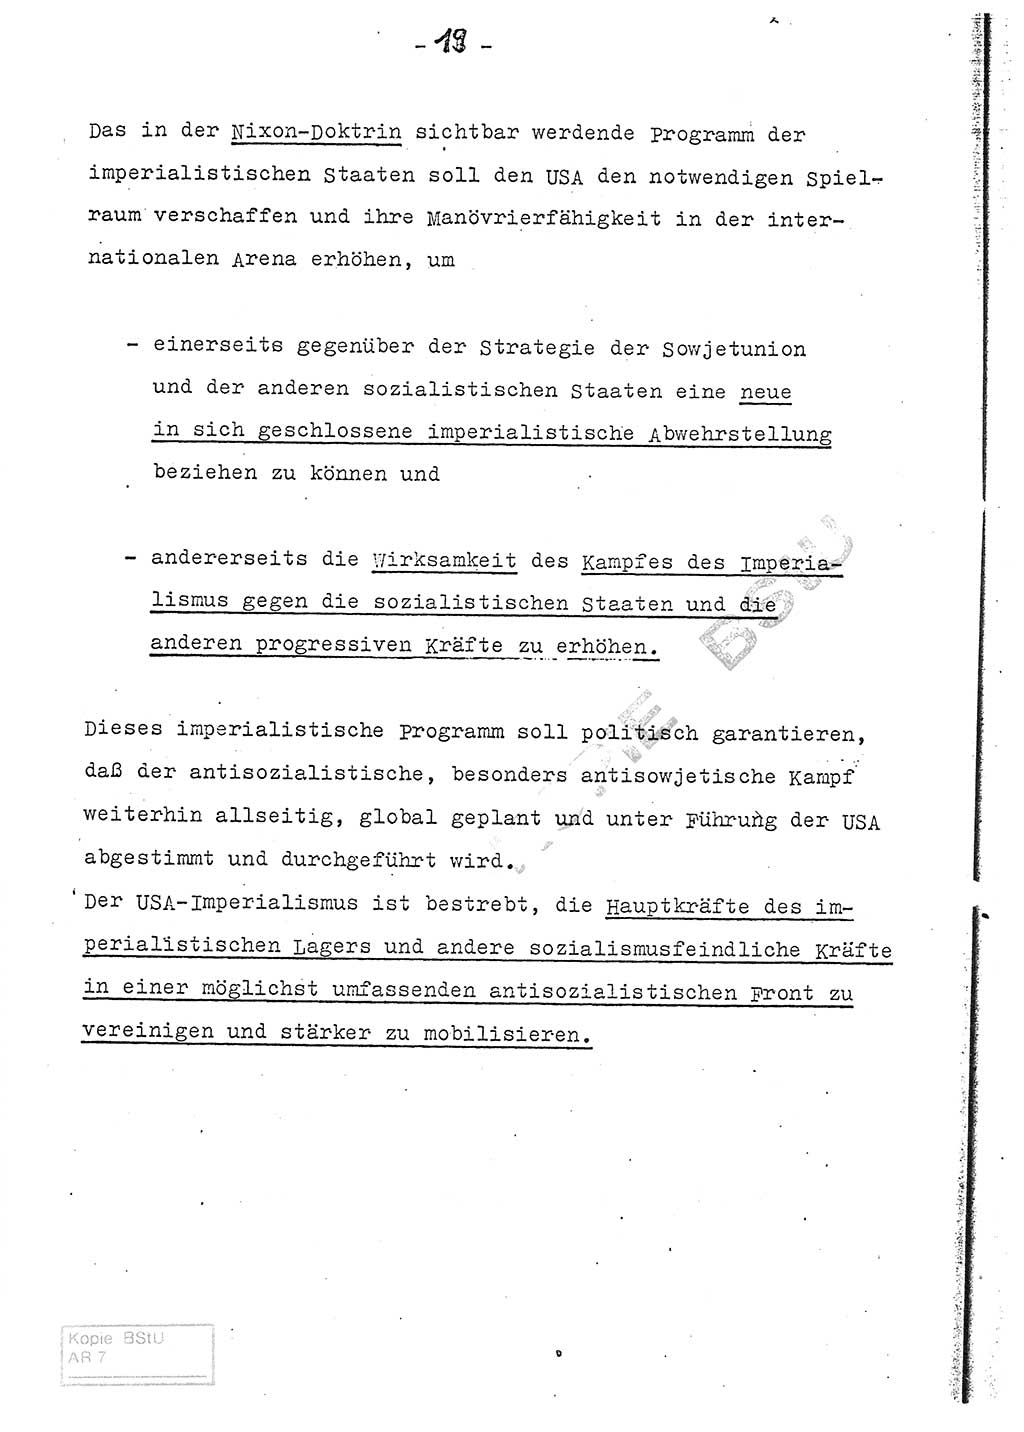 Referat (Entwurf) des Genossen Minister (Generaloberst Erich Mielke) auf der Dienstkonferenz 1972, Ministerium für Staatssicherheit (MfS) [Deutsche Demokratische Republik (DDR)], Der Minister, Geheime Verschlußsache (GVS) 008-150/72, Berlin 25.2.1972, Seite 19 (Ref. Entw. DK MfS DDR Min. GVS 008-150/72 1972, S. 19)